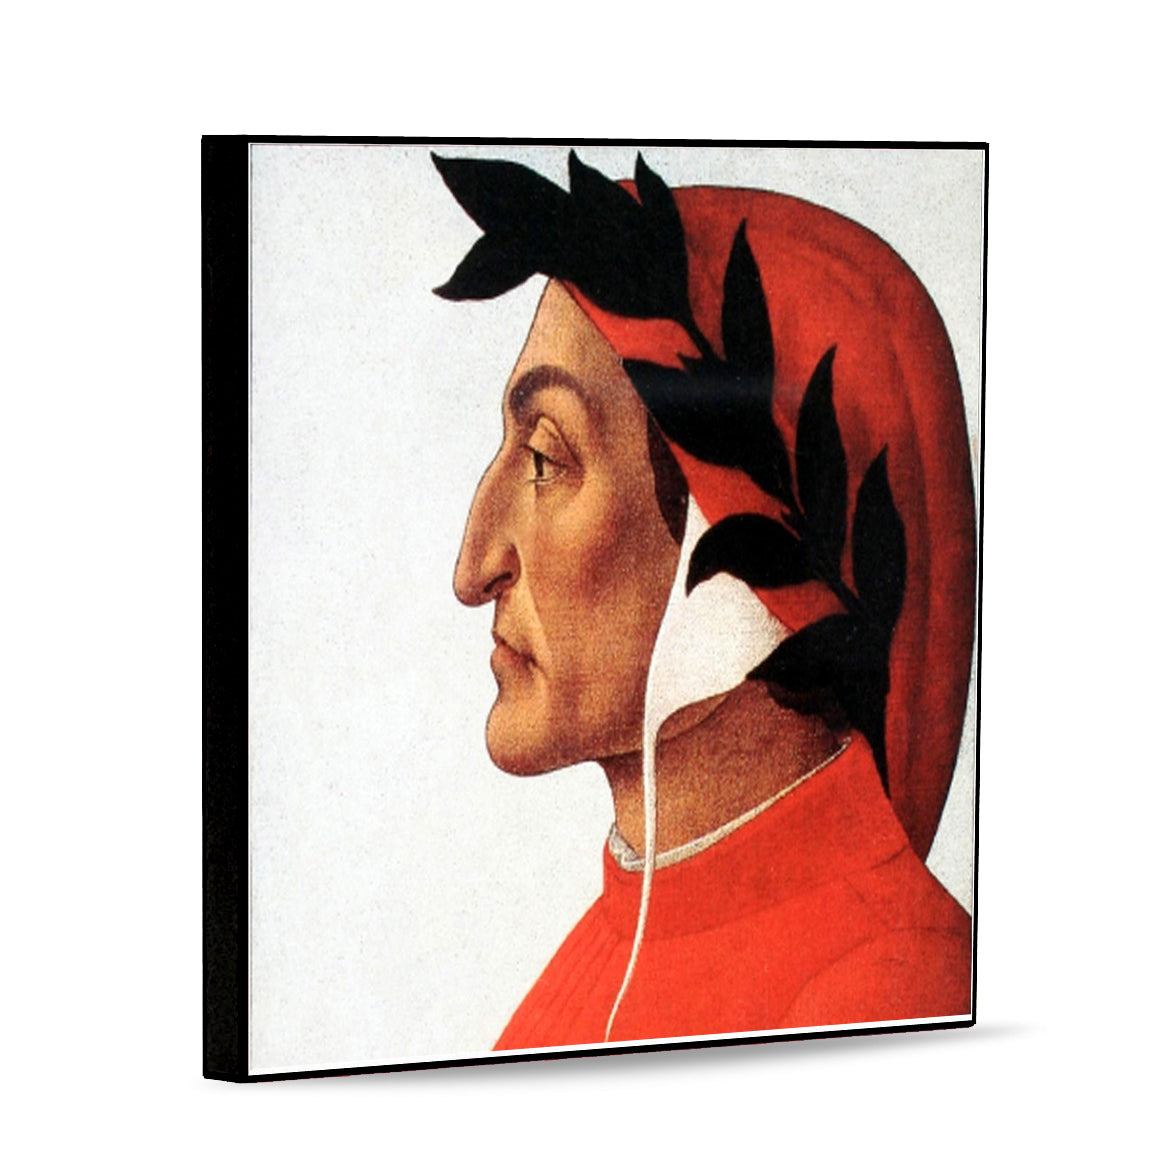 AFFRESCO: Panel Tile - Opera "Profile portrait of Dante" by Sandro Botticelli